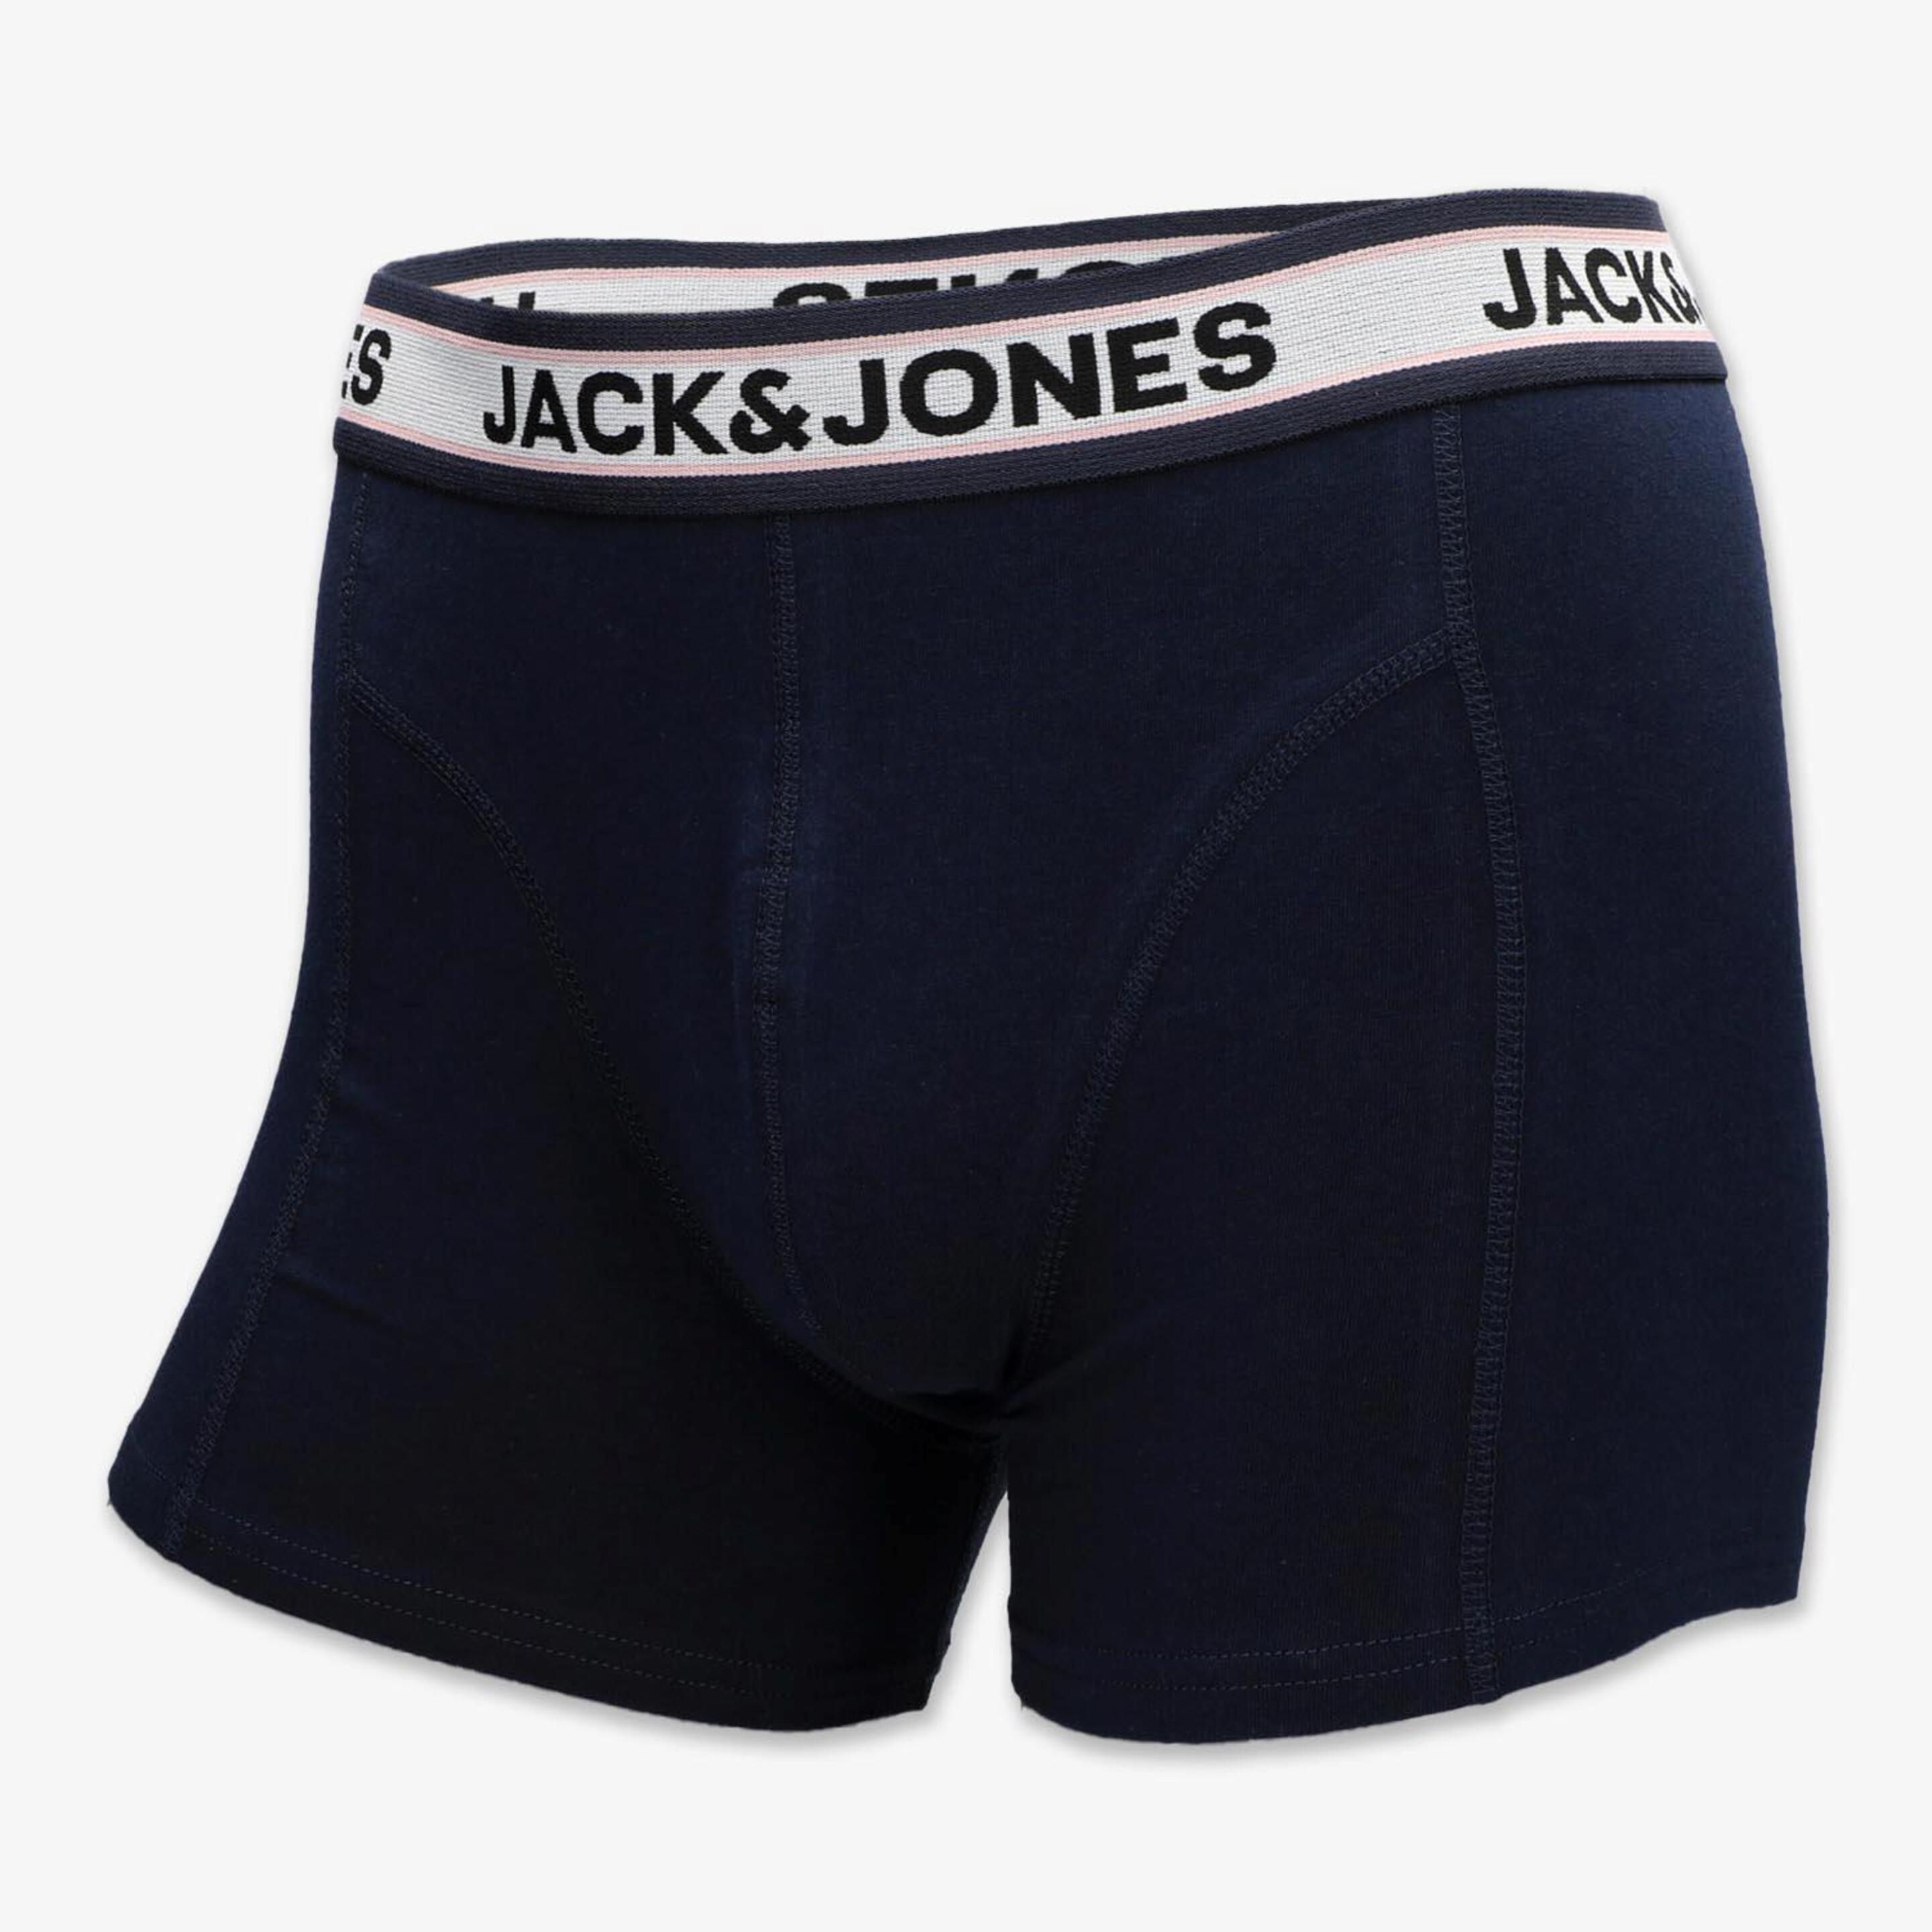 Jack & Jones Jacmarco - naranja - Calzoncillos Bóxer